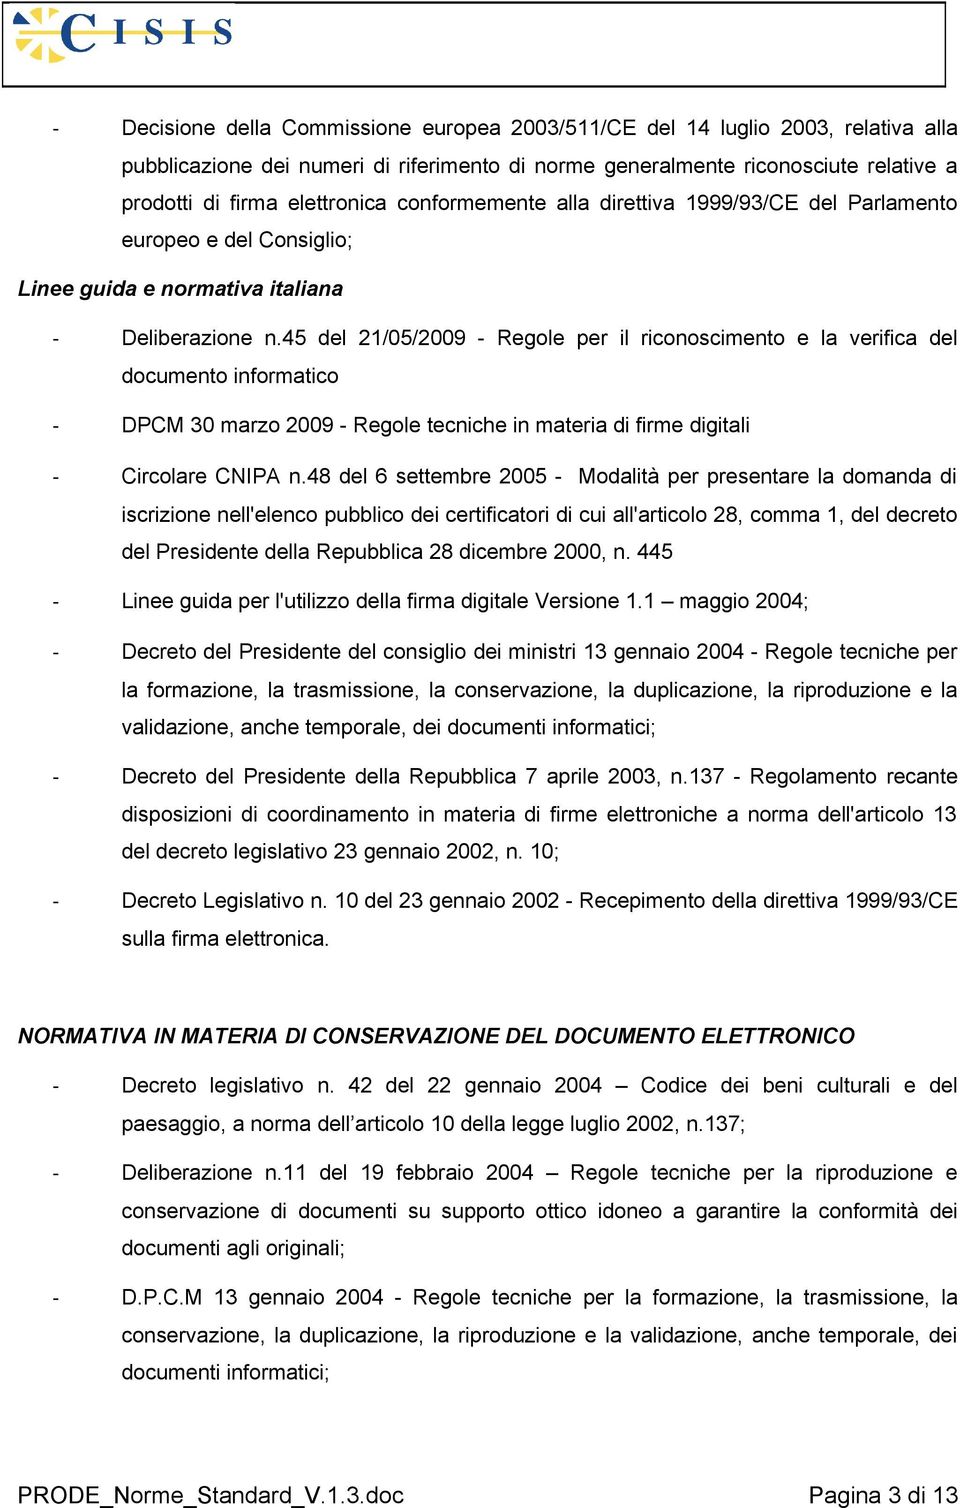 45 del 21/05/2009 - Regole per il riconoscimento e la verifica del documento informatico - DPCM 30 marzo 2009 - Regole tecniche in materia di firme digitali - Circolare CNIPA n.